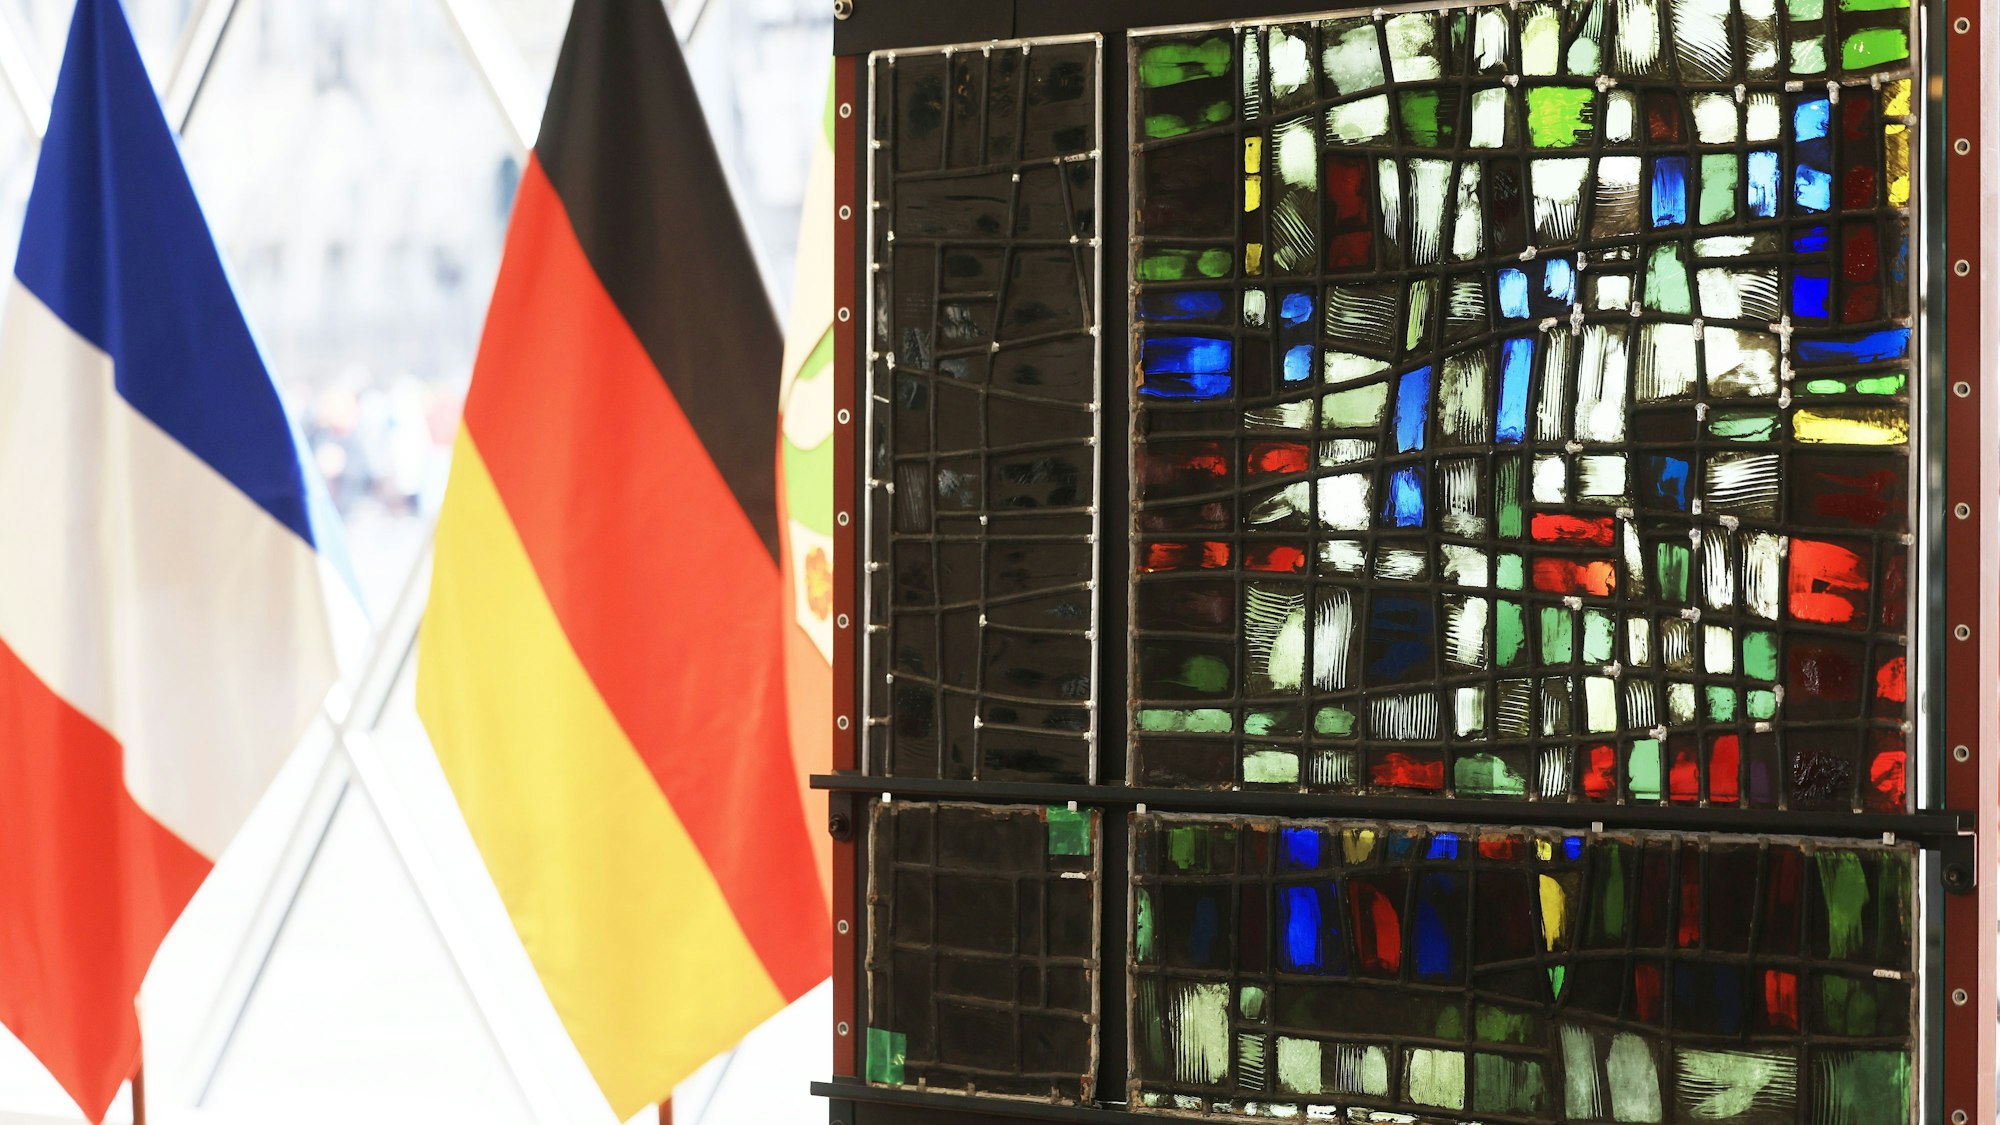 Der restaurierte (r.) und verrußte Teil (l.) eines Fenster aus der Kirche Notre-Dame hängen neben der deutschen und französischen Fahne im Kölner Domforum.Die Wiederherstellung der Glaskunst wurde als Symbol deutsch-französischer Zusammenarbeit verstanden.